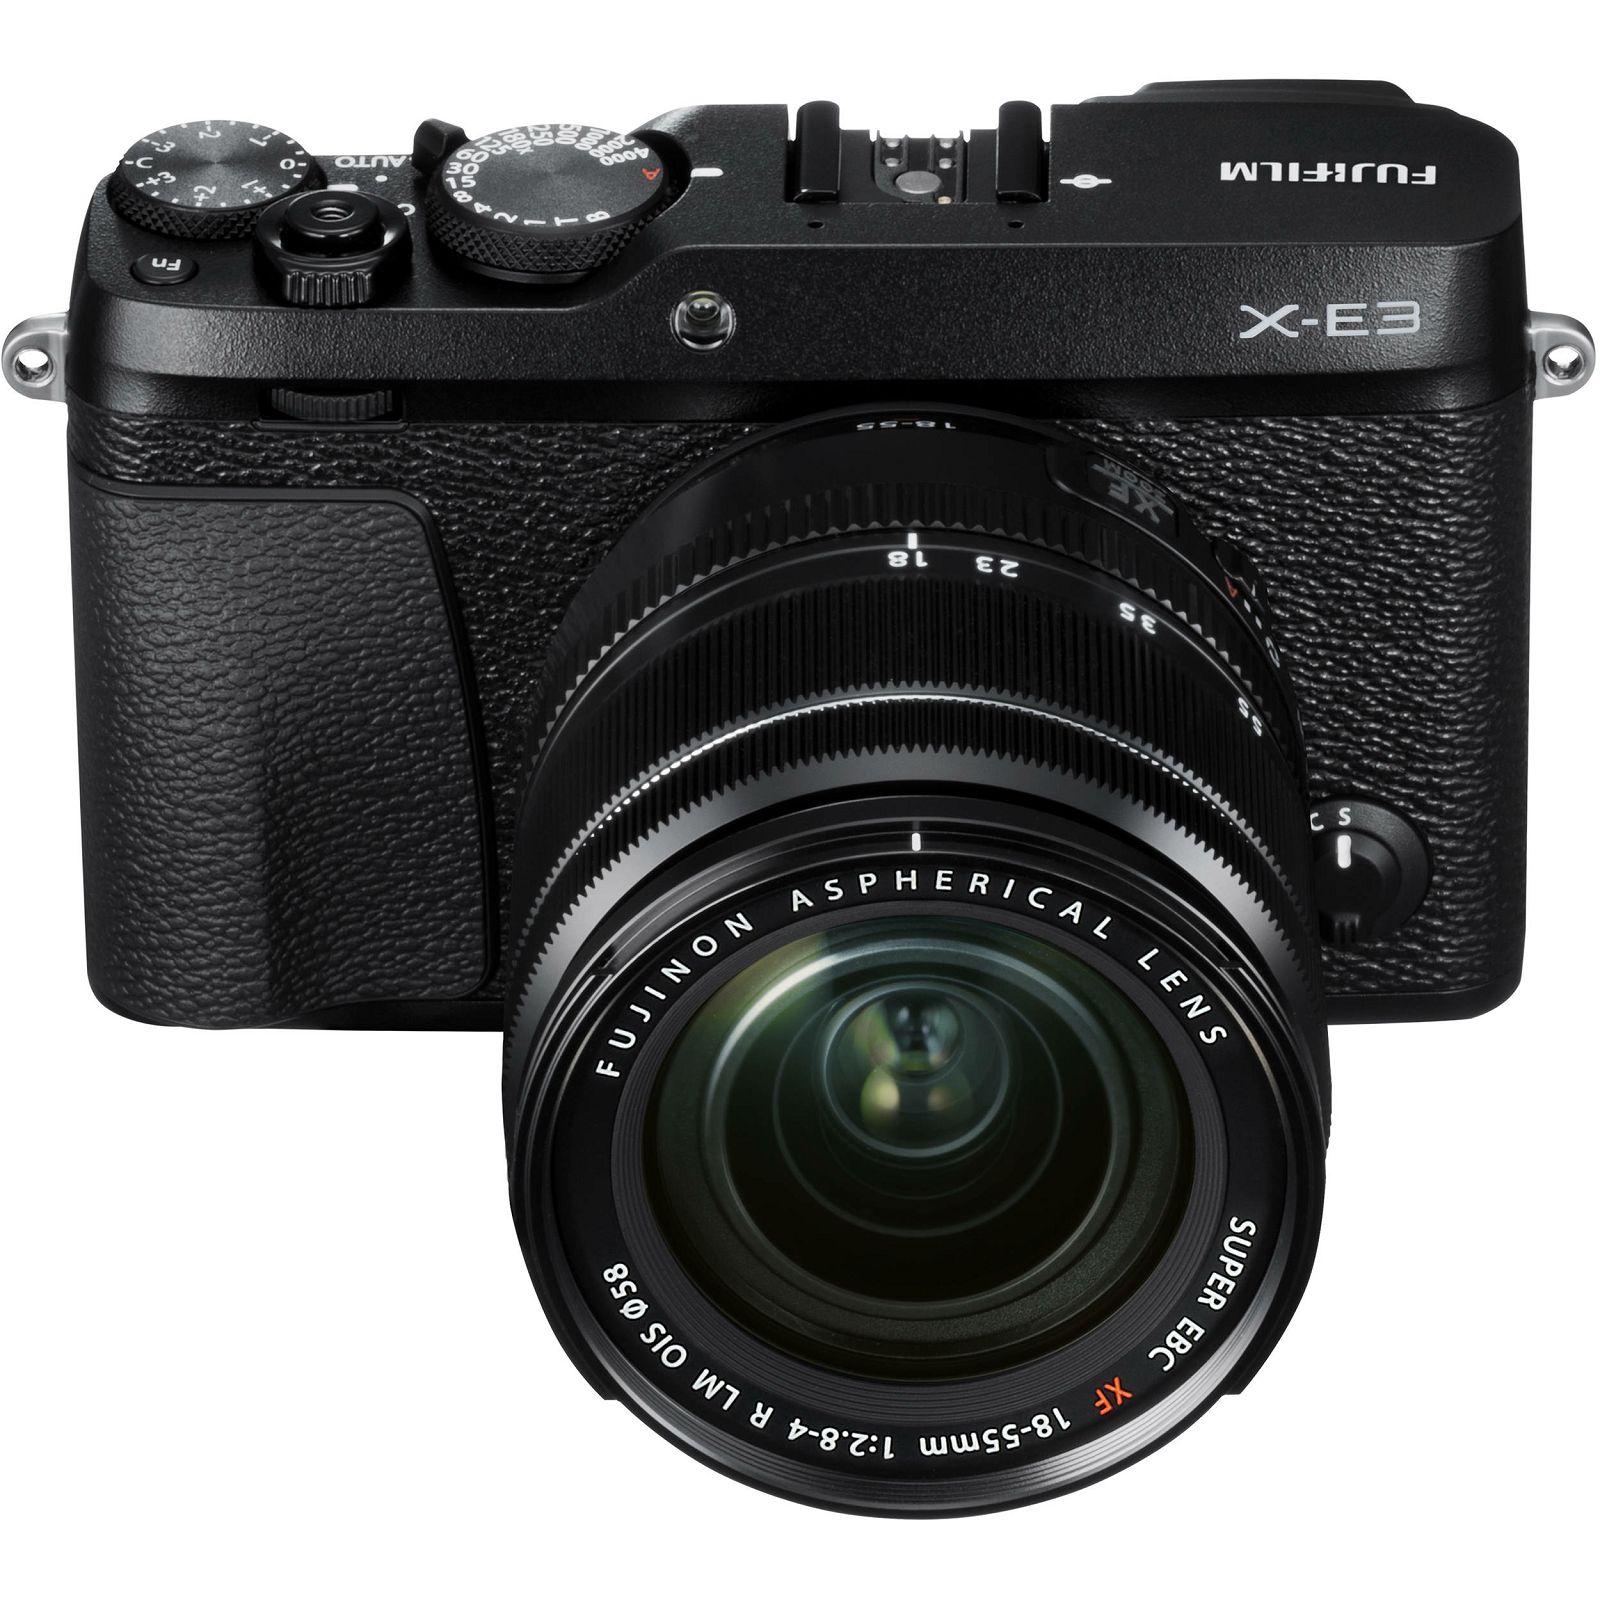 Fujifilm X-E3 + XF 18-55 EE KIT Black crni Digitalni fotoaparat s objektivom XF18-55mm Mirrorless camera Fuji Finepix XE3